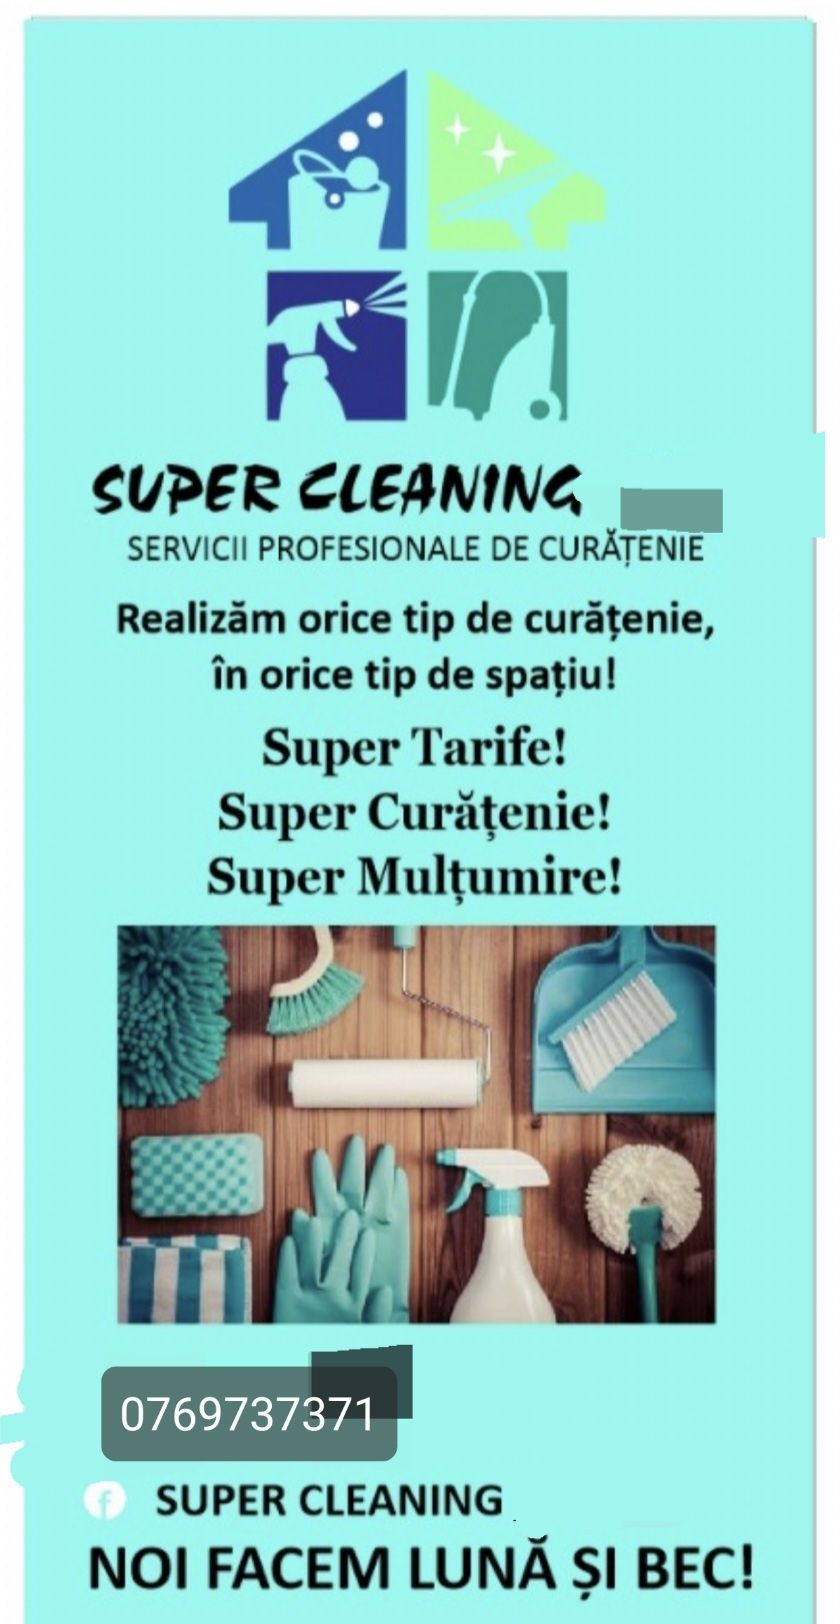 Super Cleaning !Super Curatenie